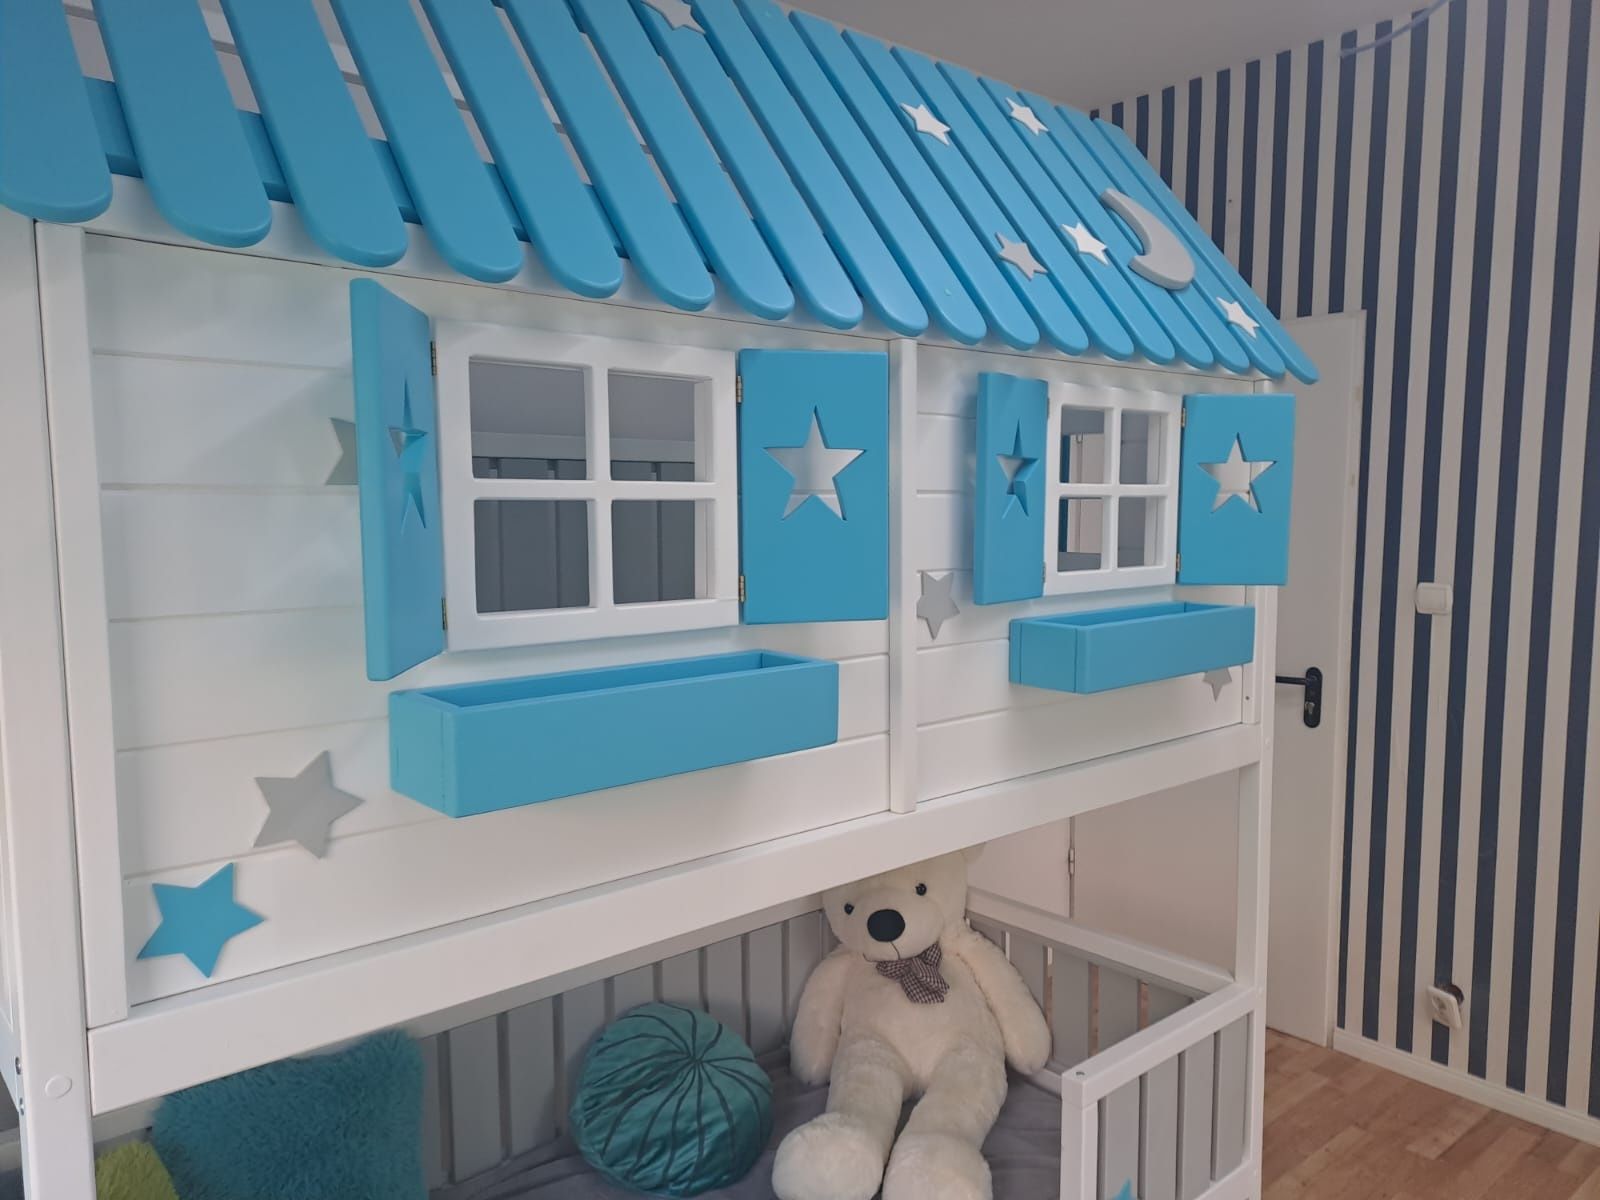 Łóżeczko  drewniane dzieciece domek piętrowy XL dla dzieci łóżko RATY